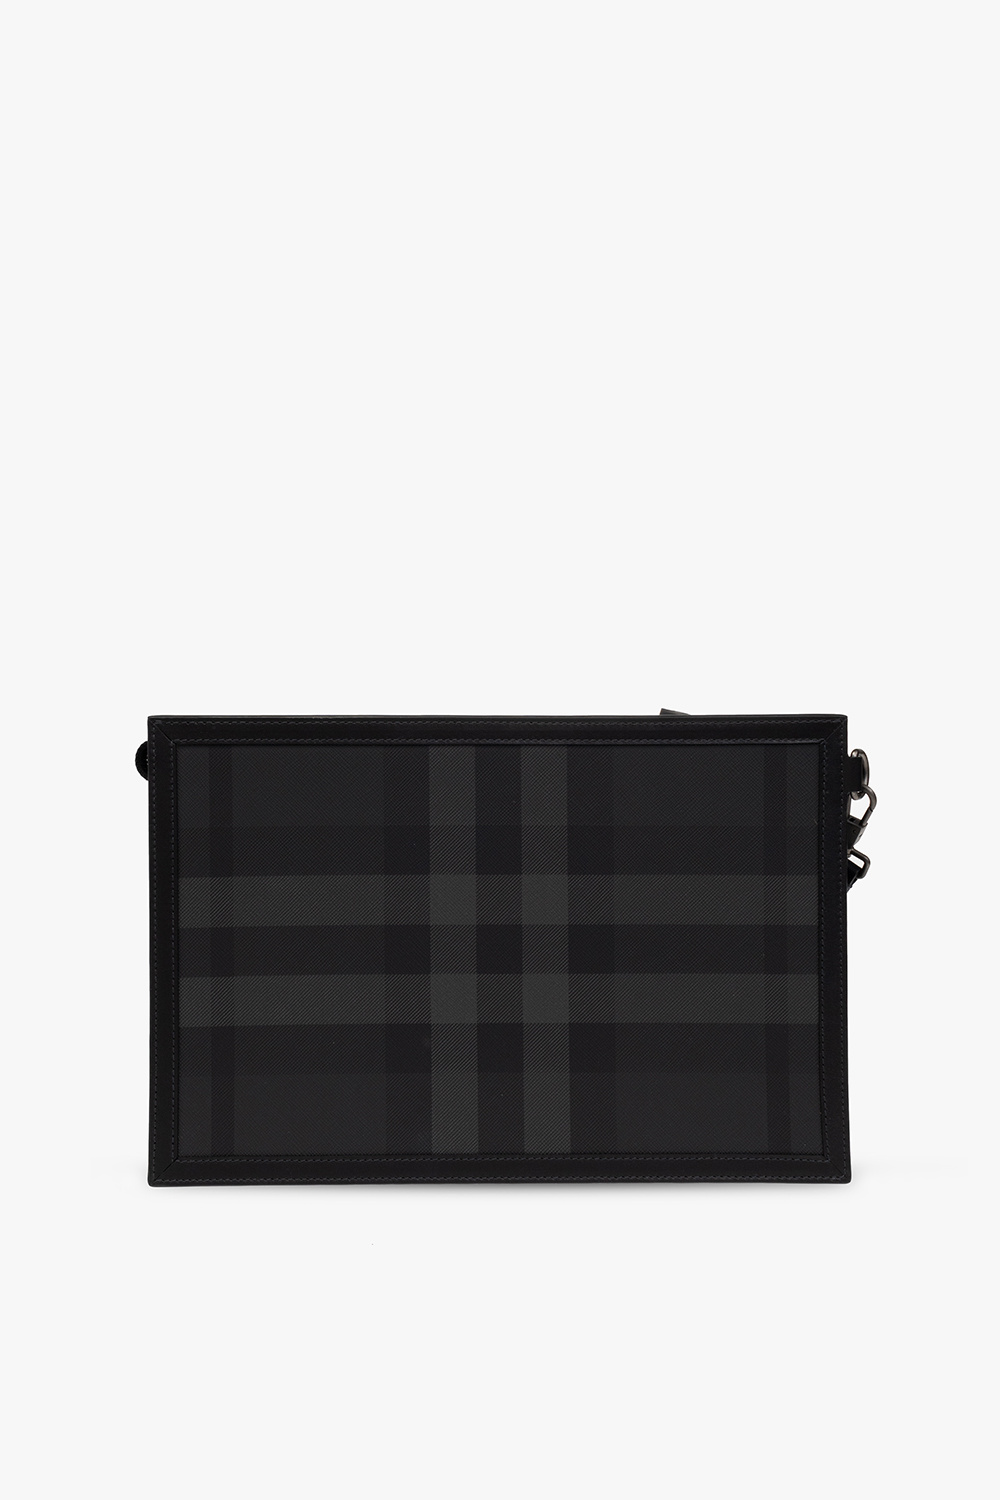 burberry jai ‘Frame’ handbag